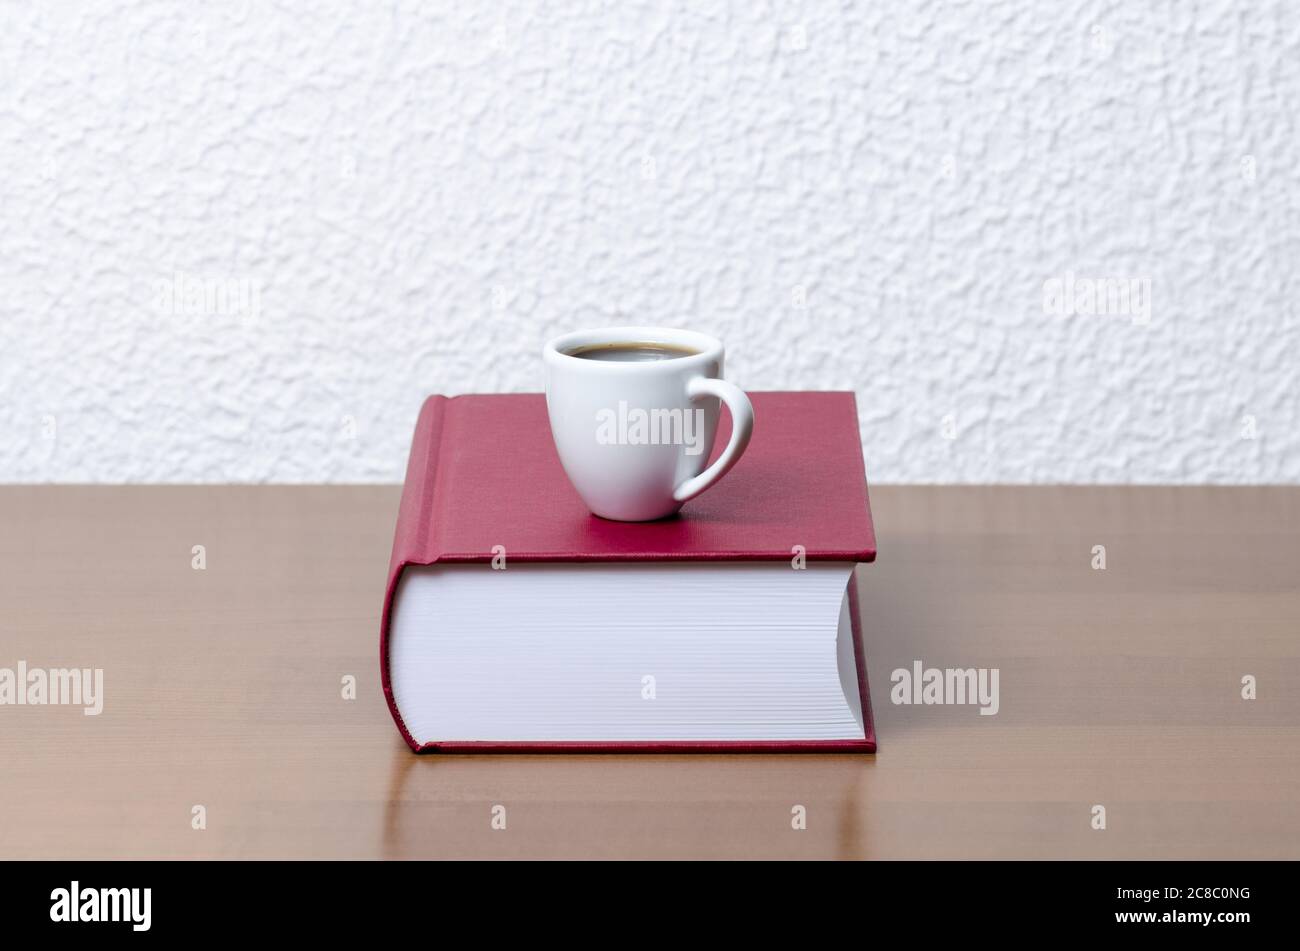 Rote Hardcover-Bücher und weiße Kaffeetasse oder Tasse mit heißem Getränk auf Holztisch oder Schreibtisch gegen weiße Wand, innen, Literatur, Bibliothek Stockfoto